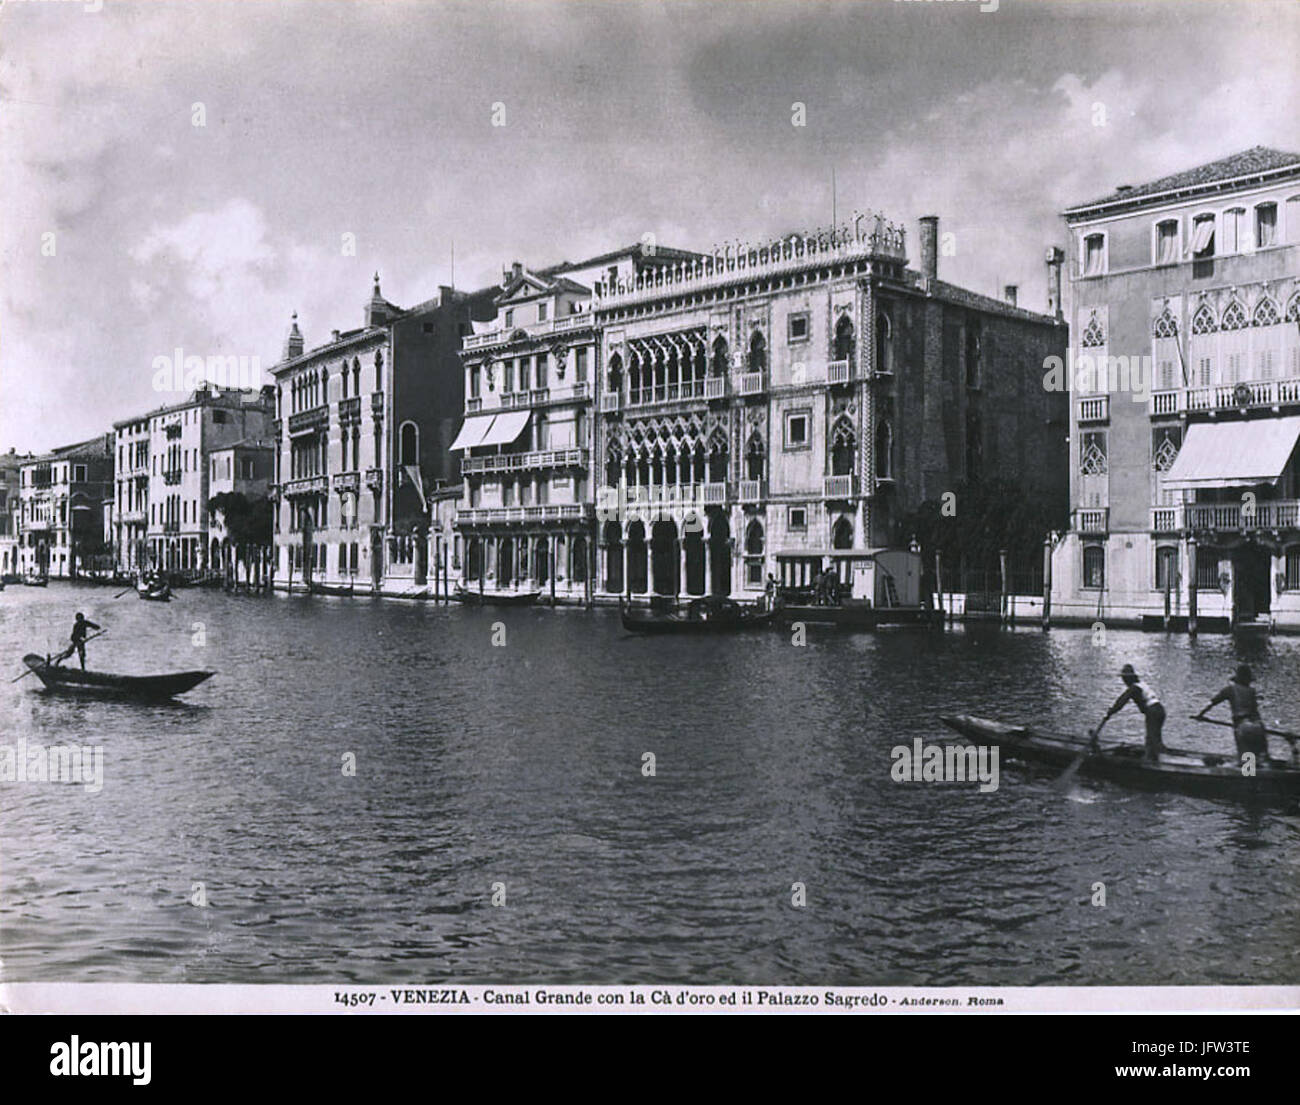 Anderson, Roma - n. 14507 - Venezia - Canal Grande con la Cà d'oro ed il Palazzo Sagredo Foto de stock